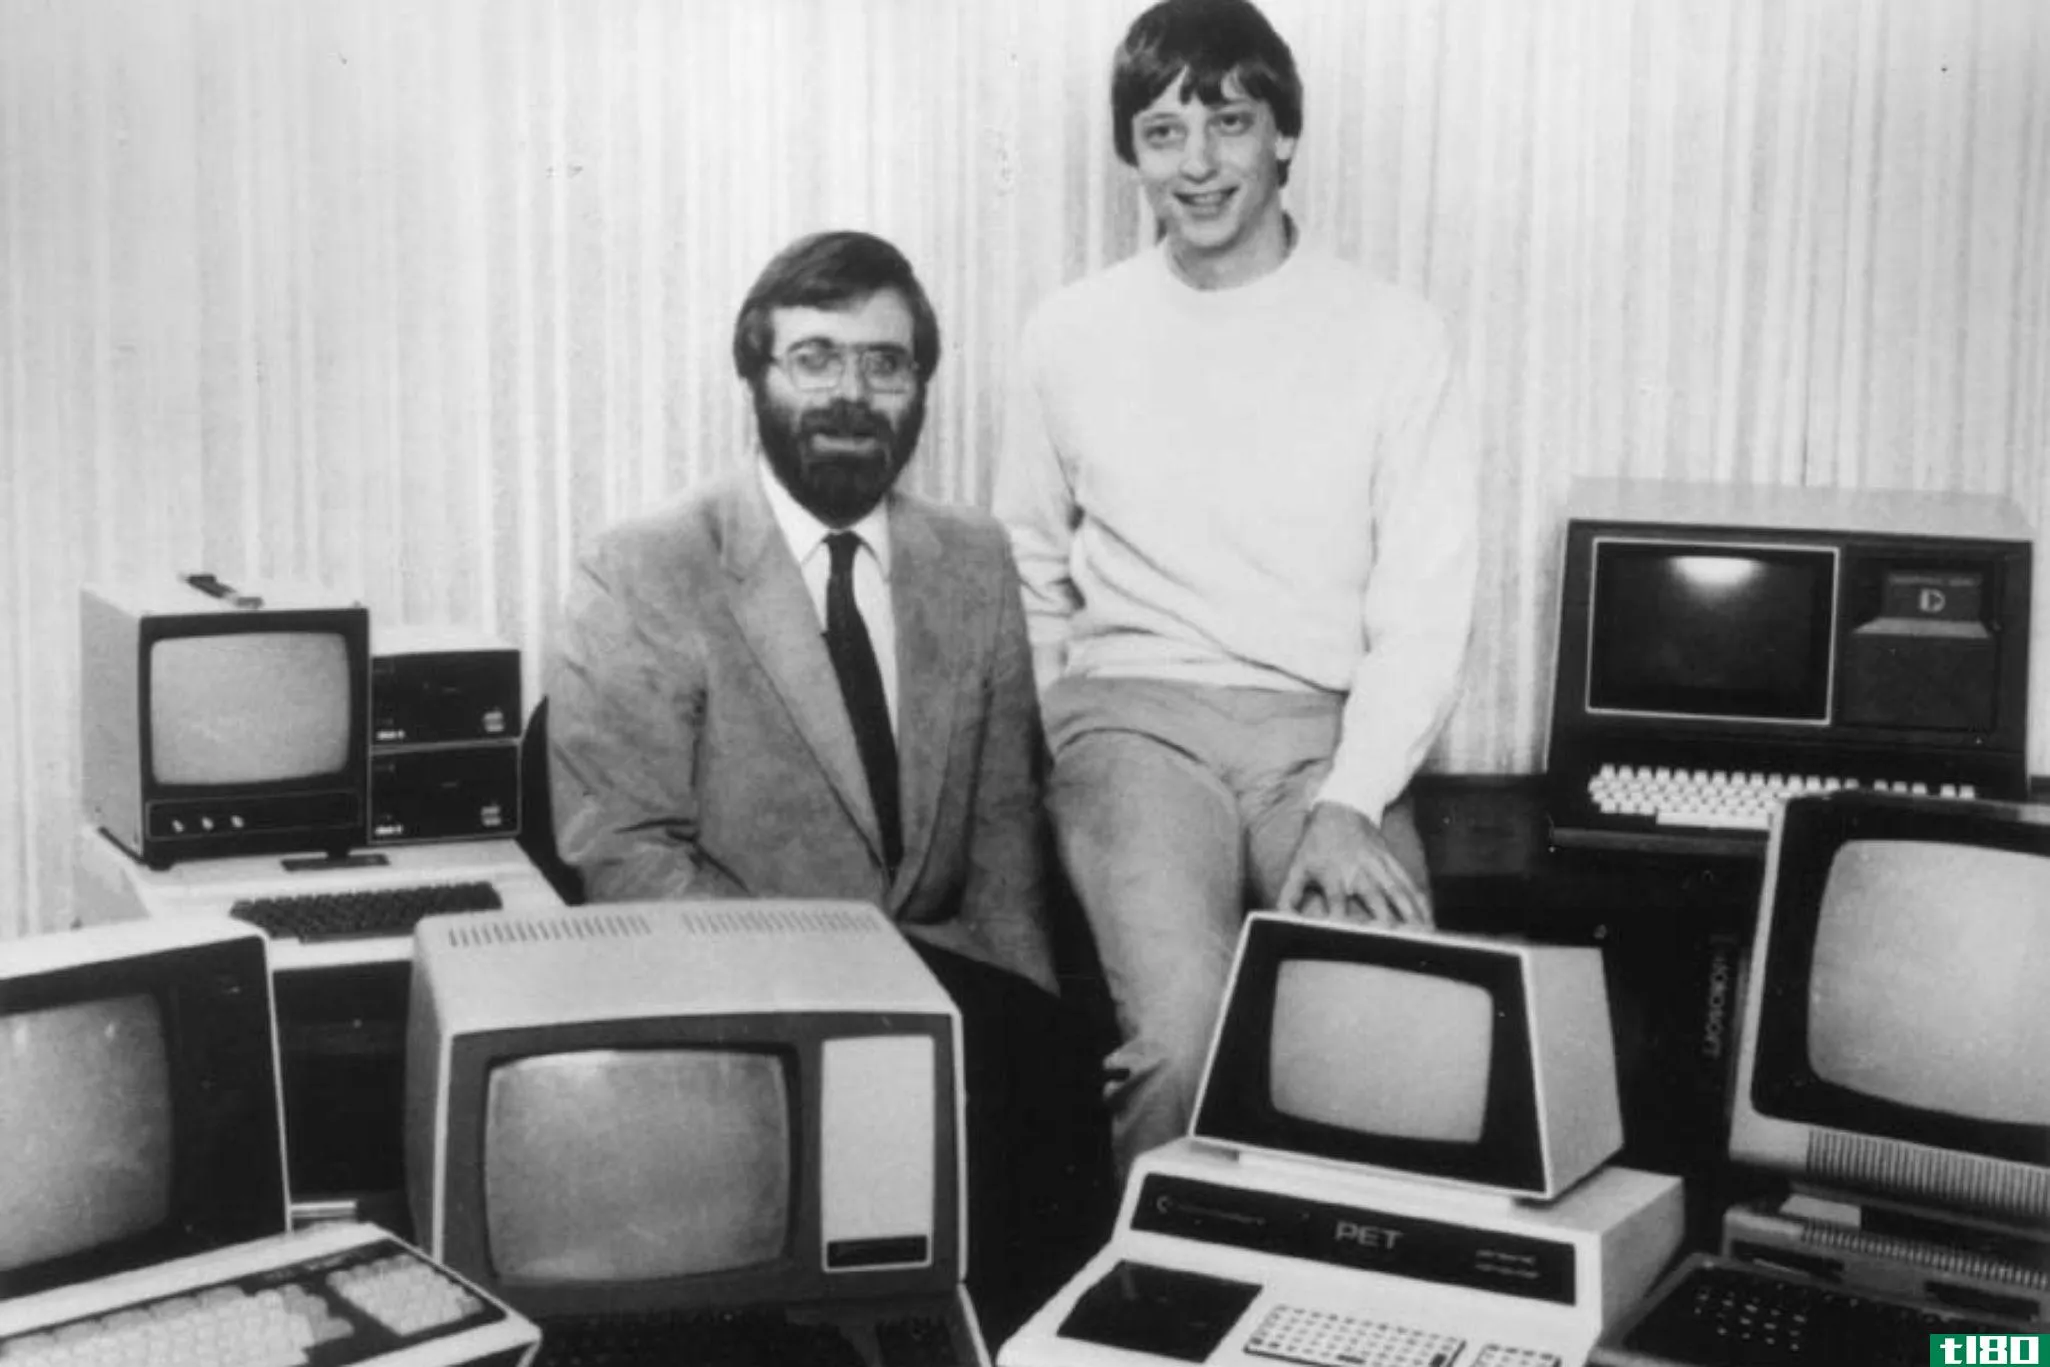 阅读比尔·盖茨在微软成立40周年之际写给微软员工的信